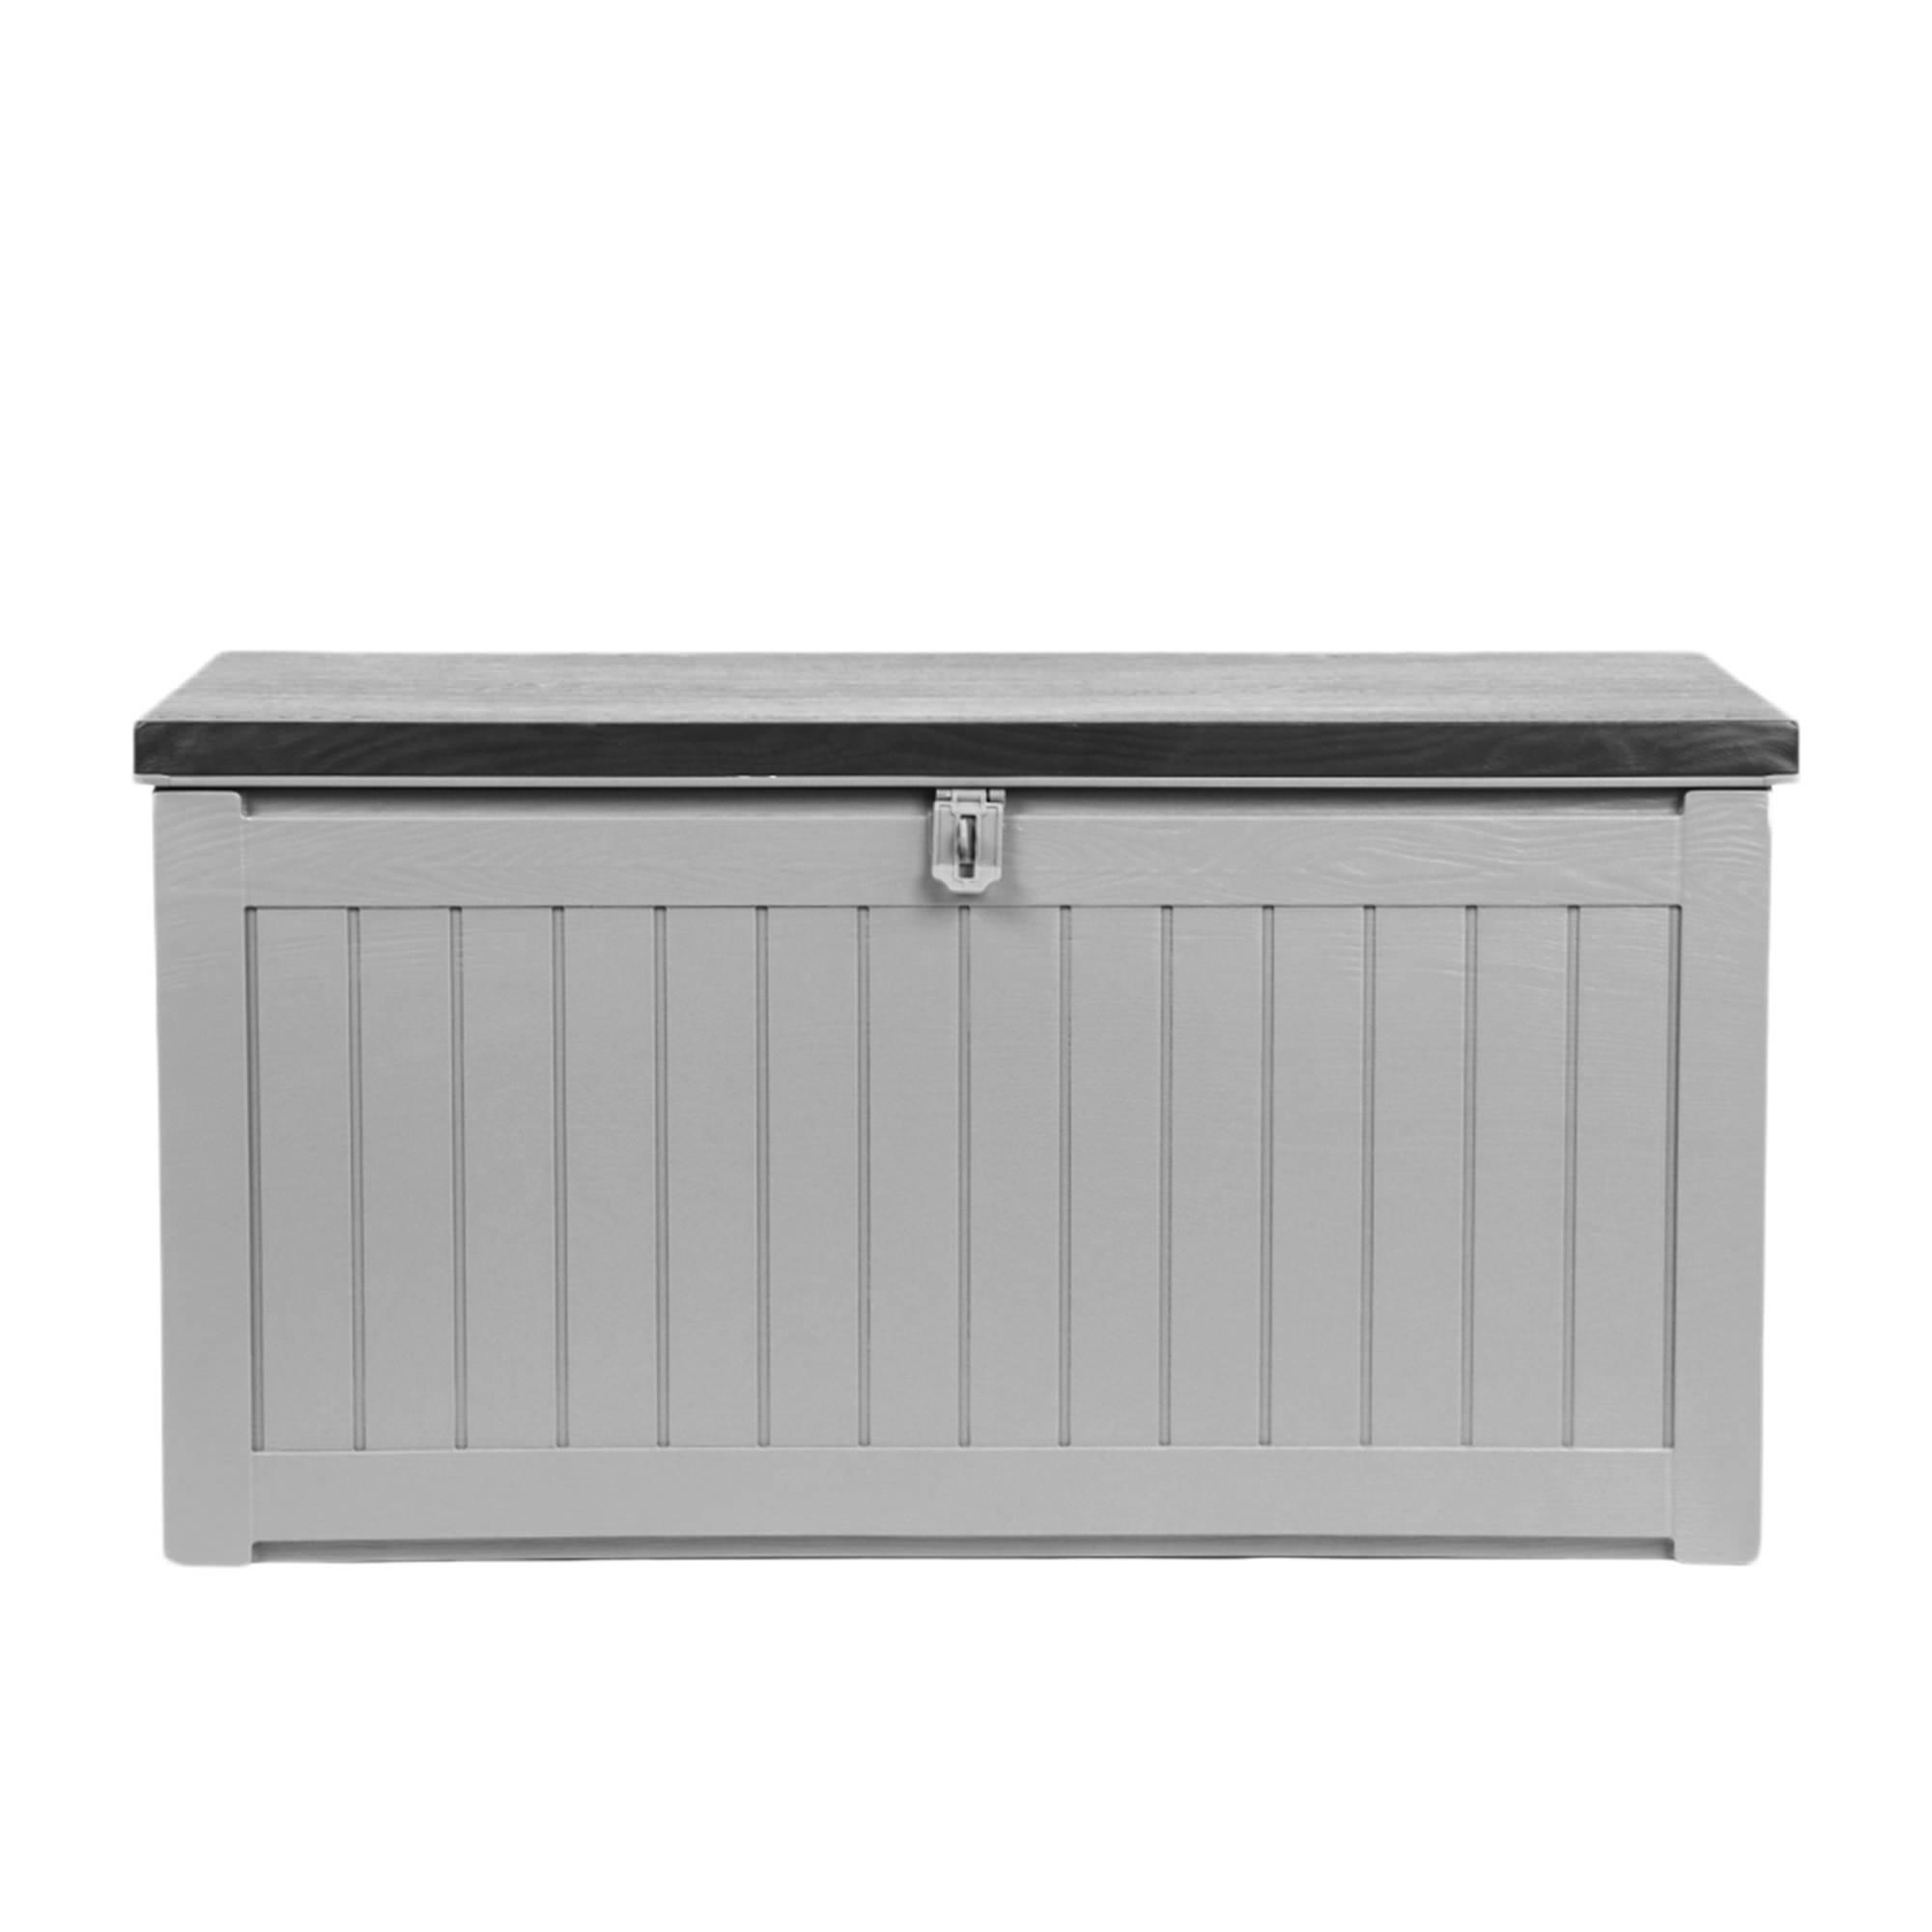 Gardeon Outdoor Storage Box 190L Dark Grey Image 3